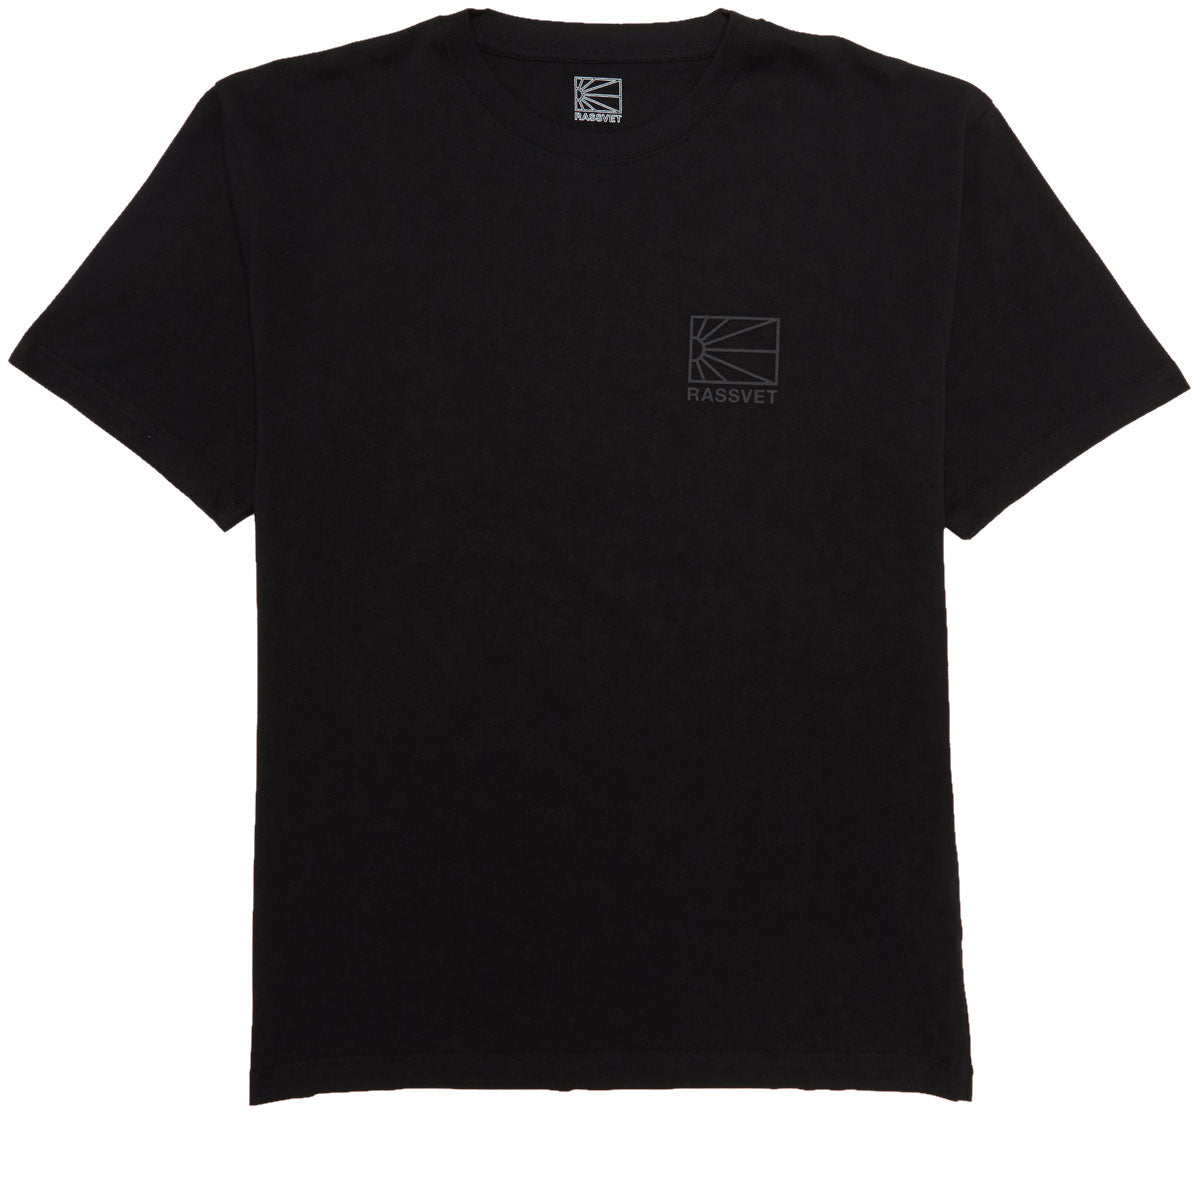 Rassvet Mini Logo T-Shirt - Black image 1